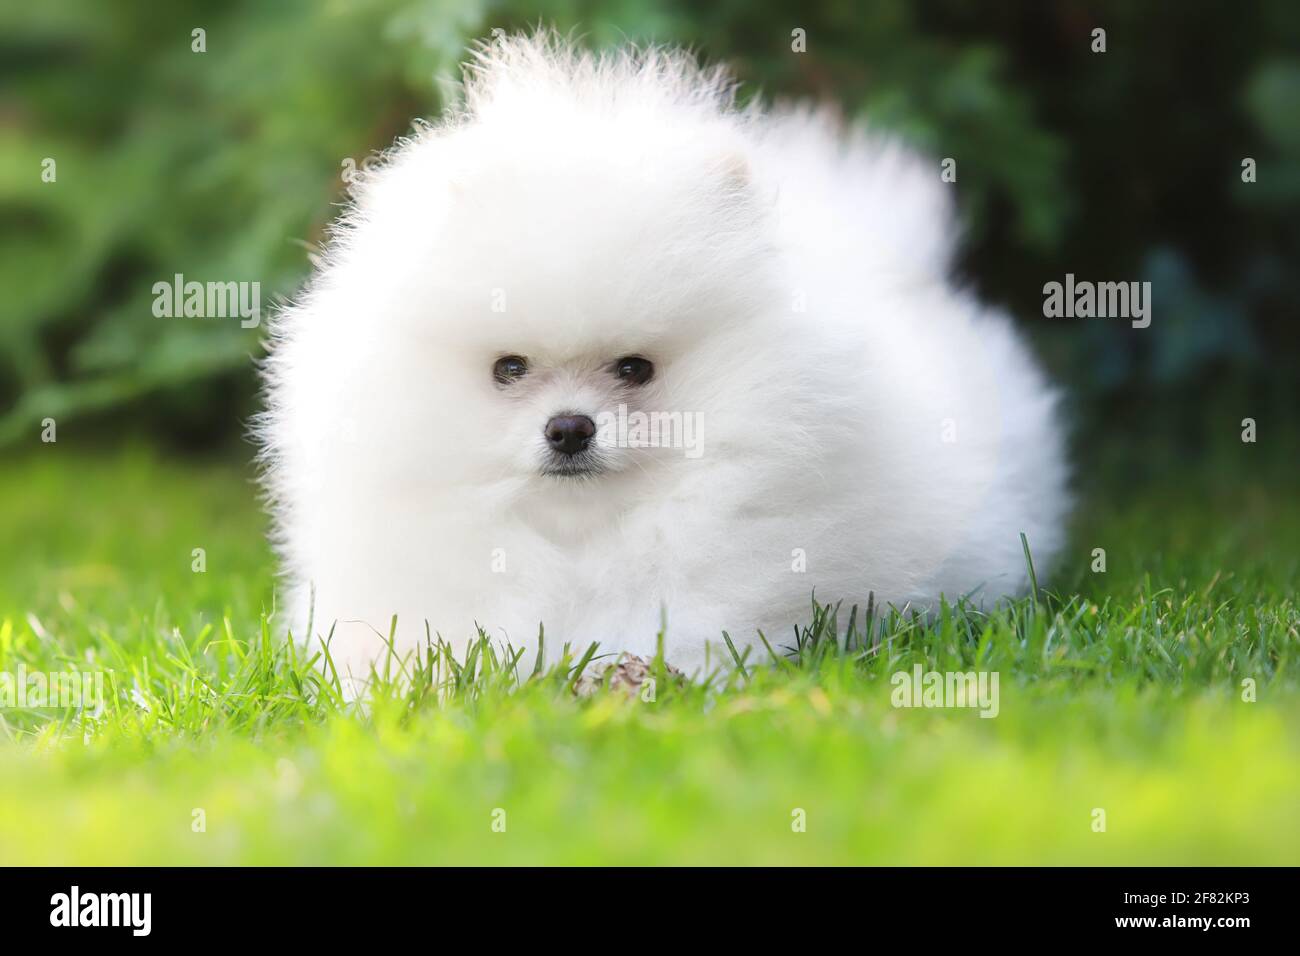 Hund, Welpe der Rasse Pomeranian spitz von weißer Farbe spielen auf einem  grünen Rasen Stockfotografie - Alamy